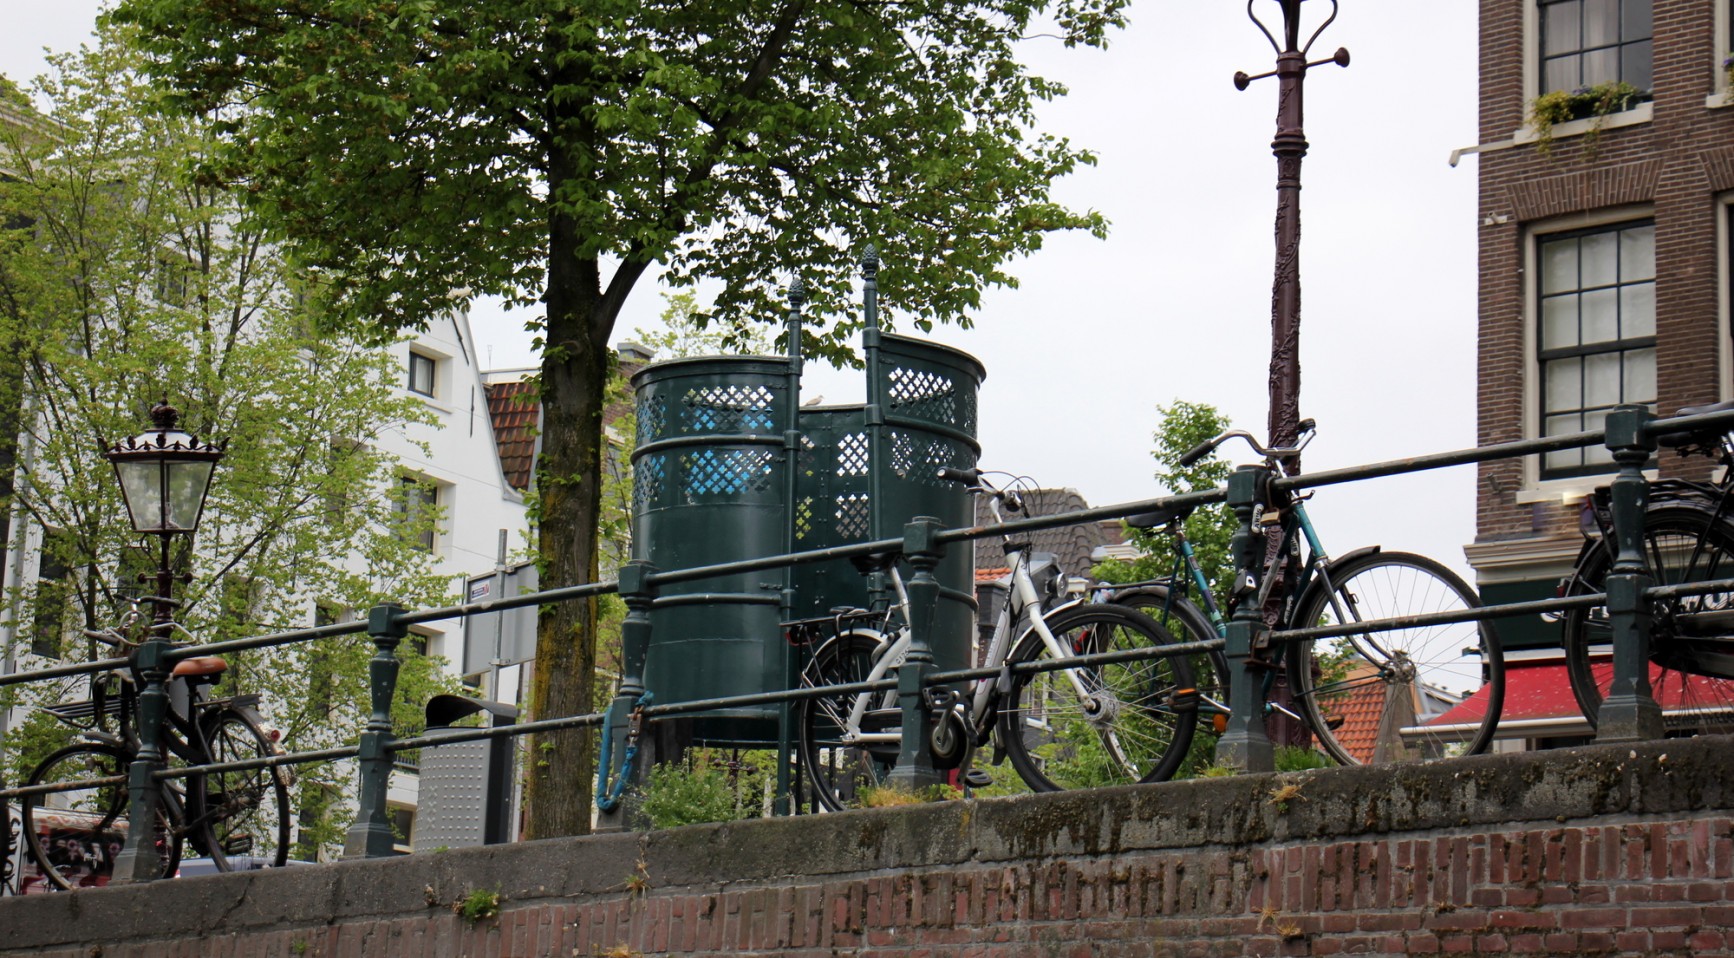 عدد قليل جدًا من المراحيض العامة في هولندا ؛ فقط ثلث البلديات تفعل شيئًا ما بشان الموضوع